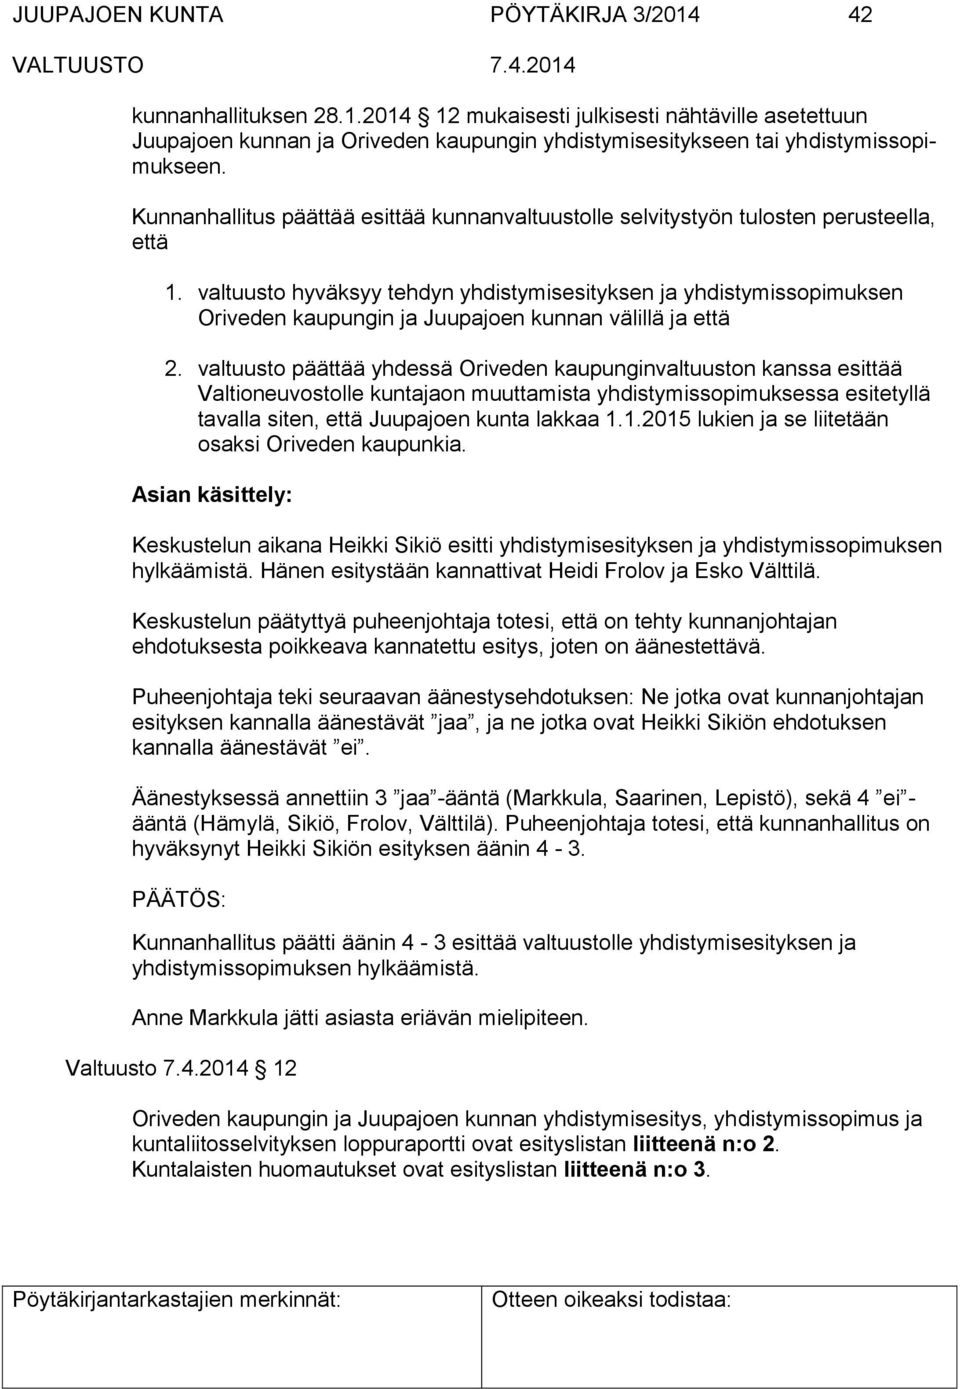 valtuusto hyväksyy tehdyn yhdistymisesityksen ja yhdistymissopimuksen Oriveden kaupungin ja Juupajoen kunnan välillä ja että 2.